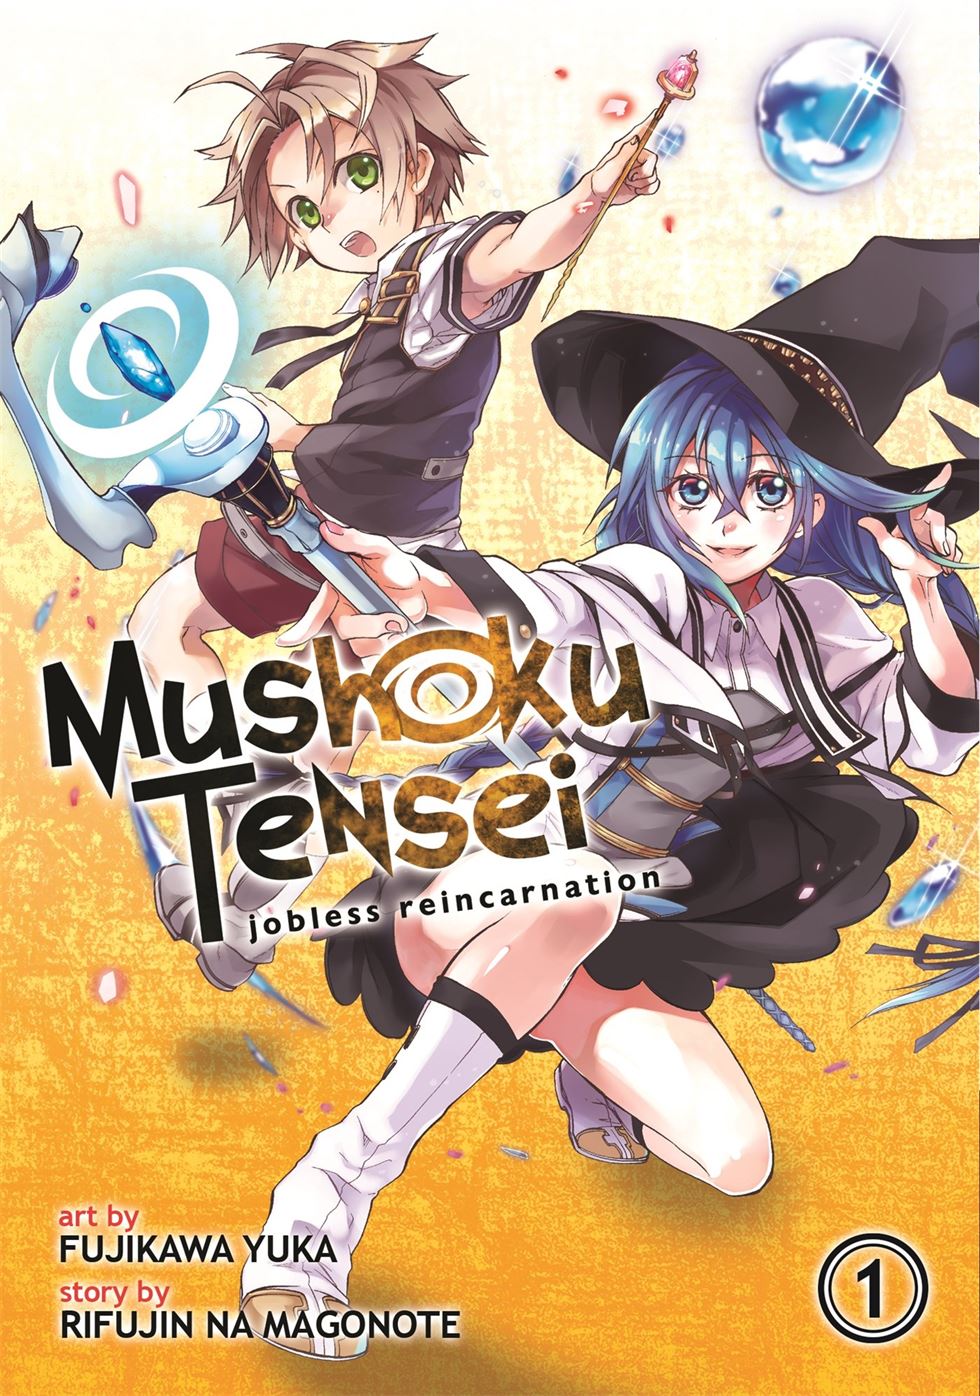 mushoku tensei season 2 sub indo otaku